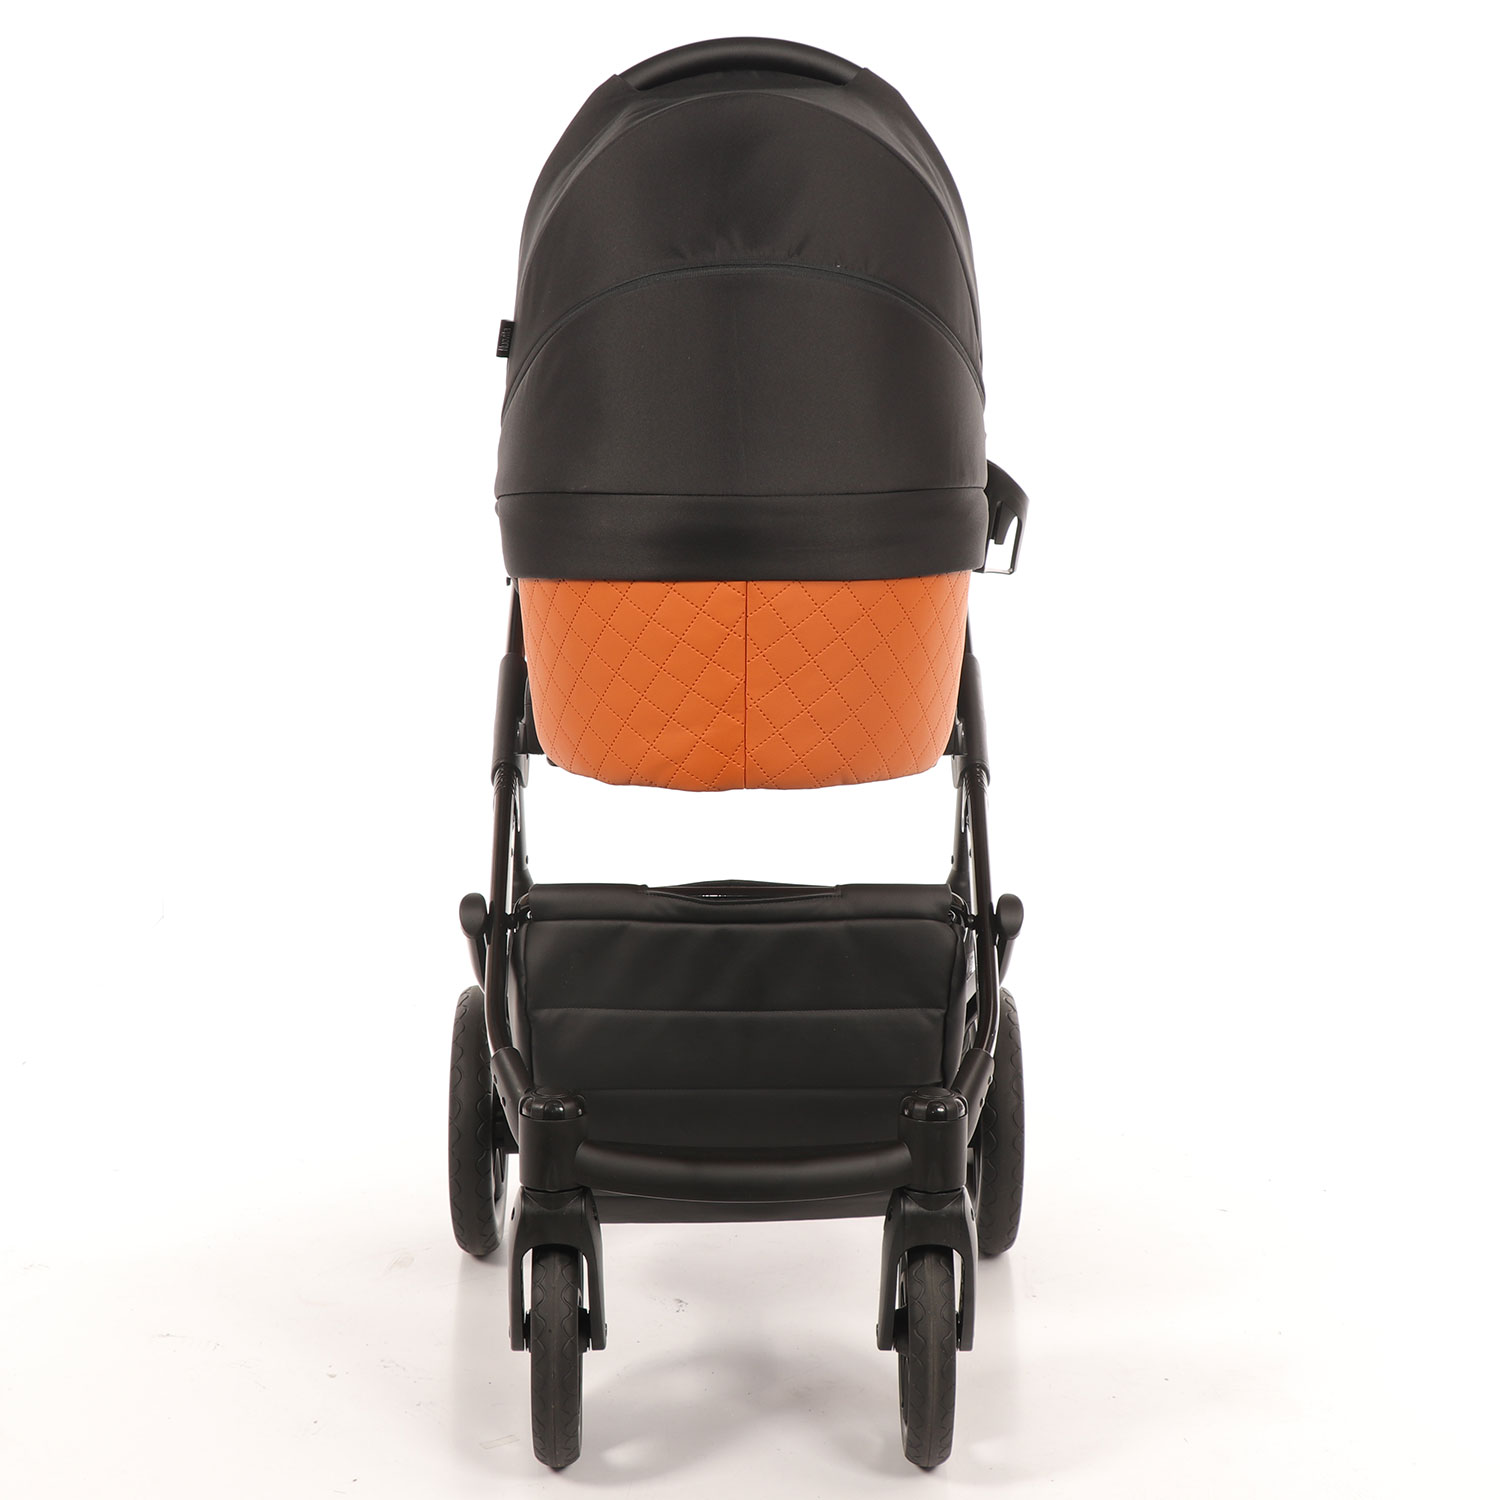 Детская коляска Nuovita Diamante, цвет Arancio / Оранжевый  